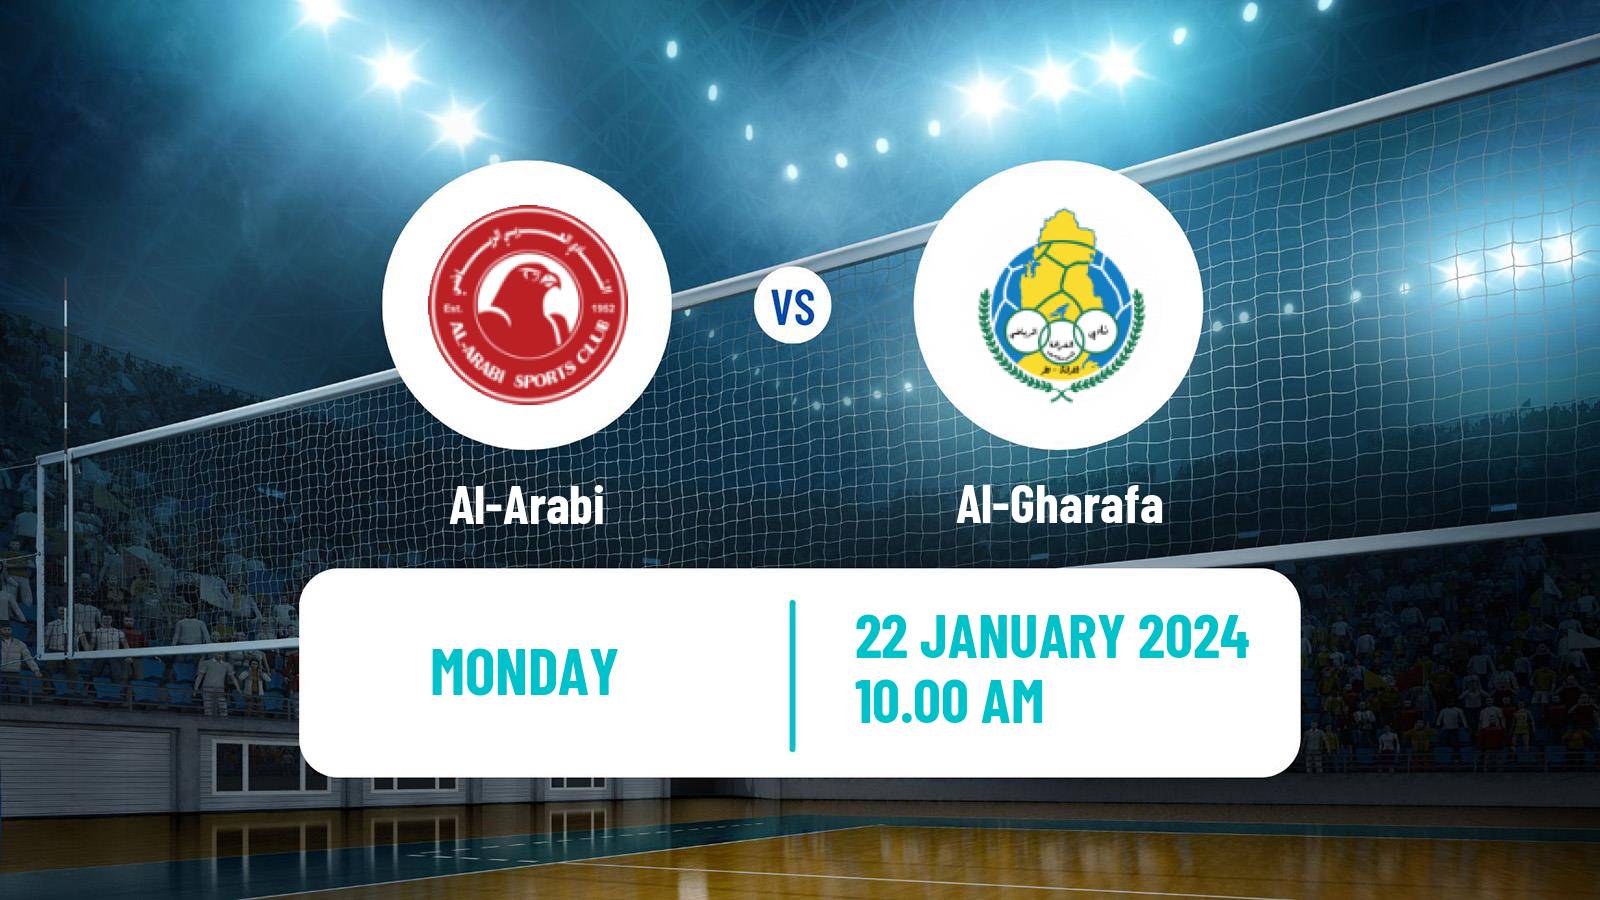 Volleyball Qatar Volleyball League Al-Arabi - Al-Gharafa